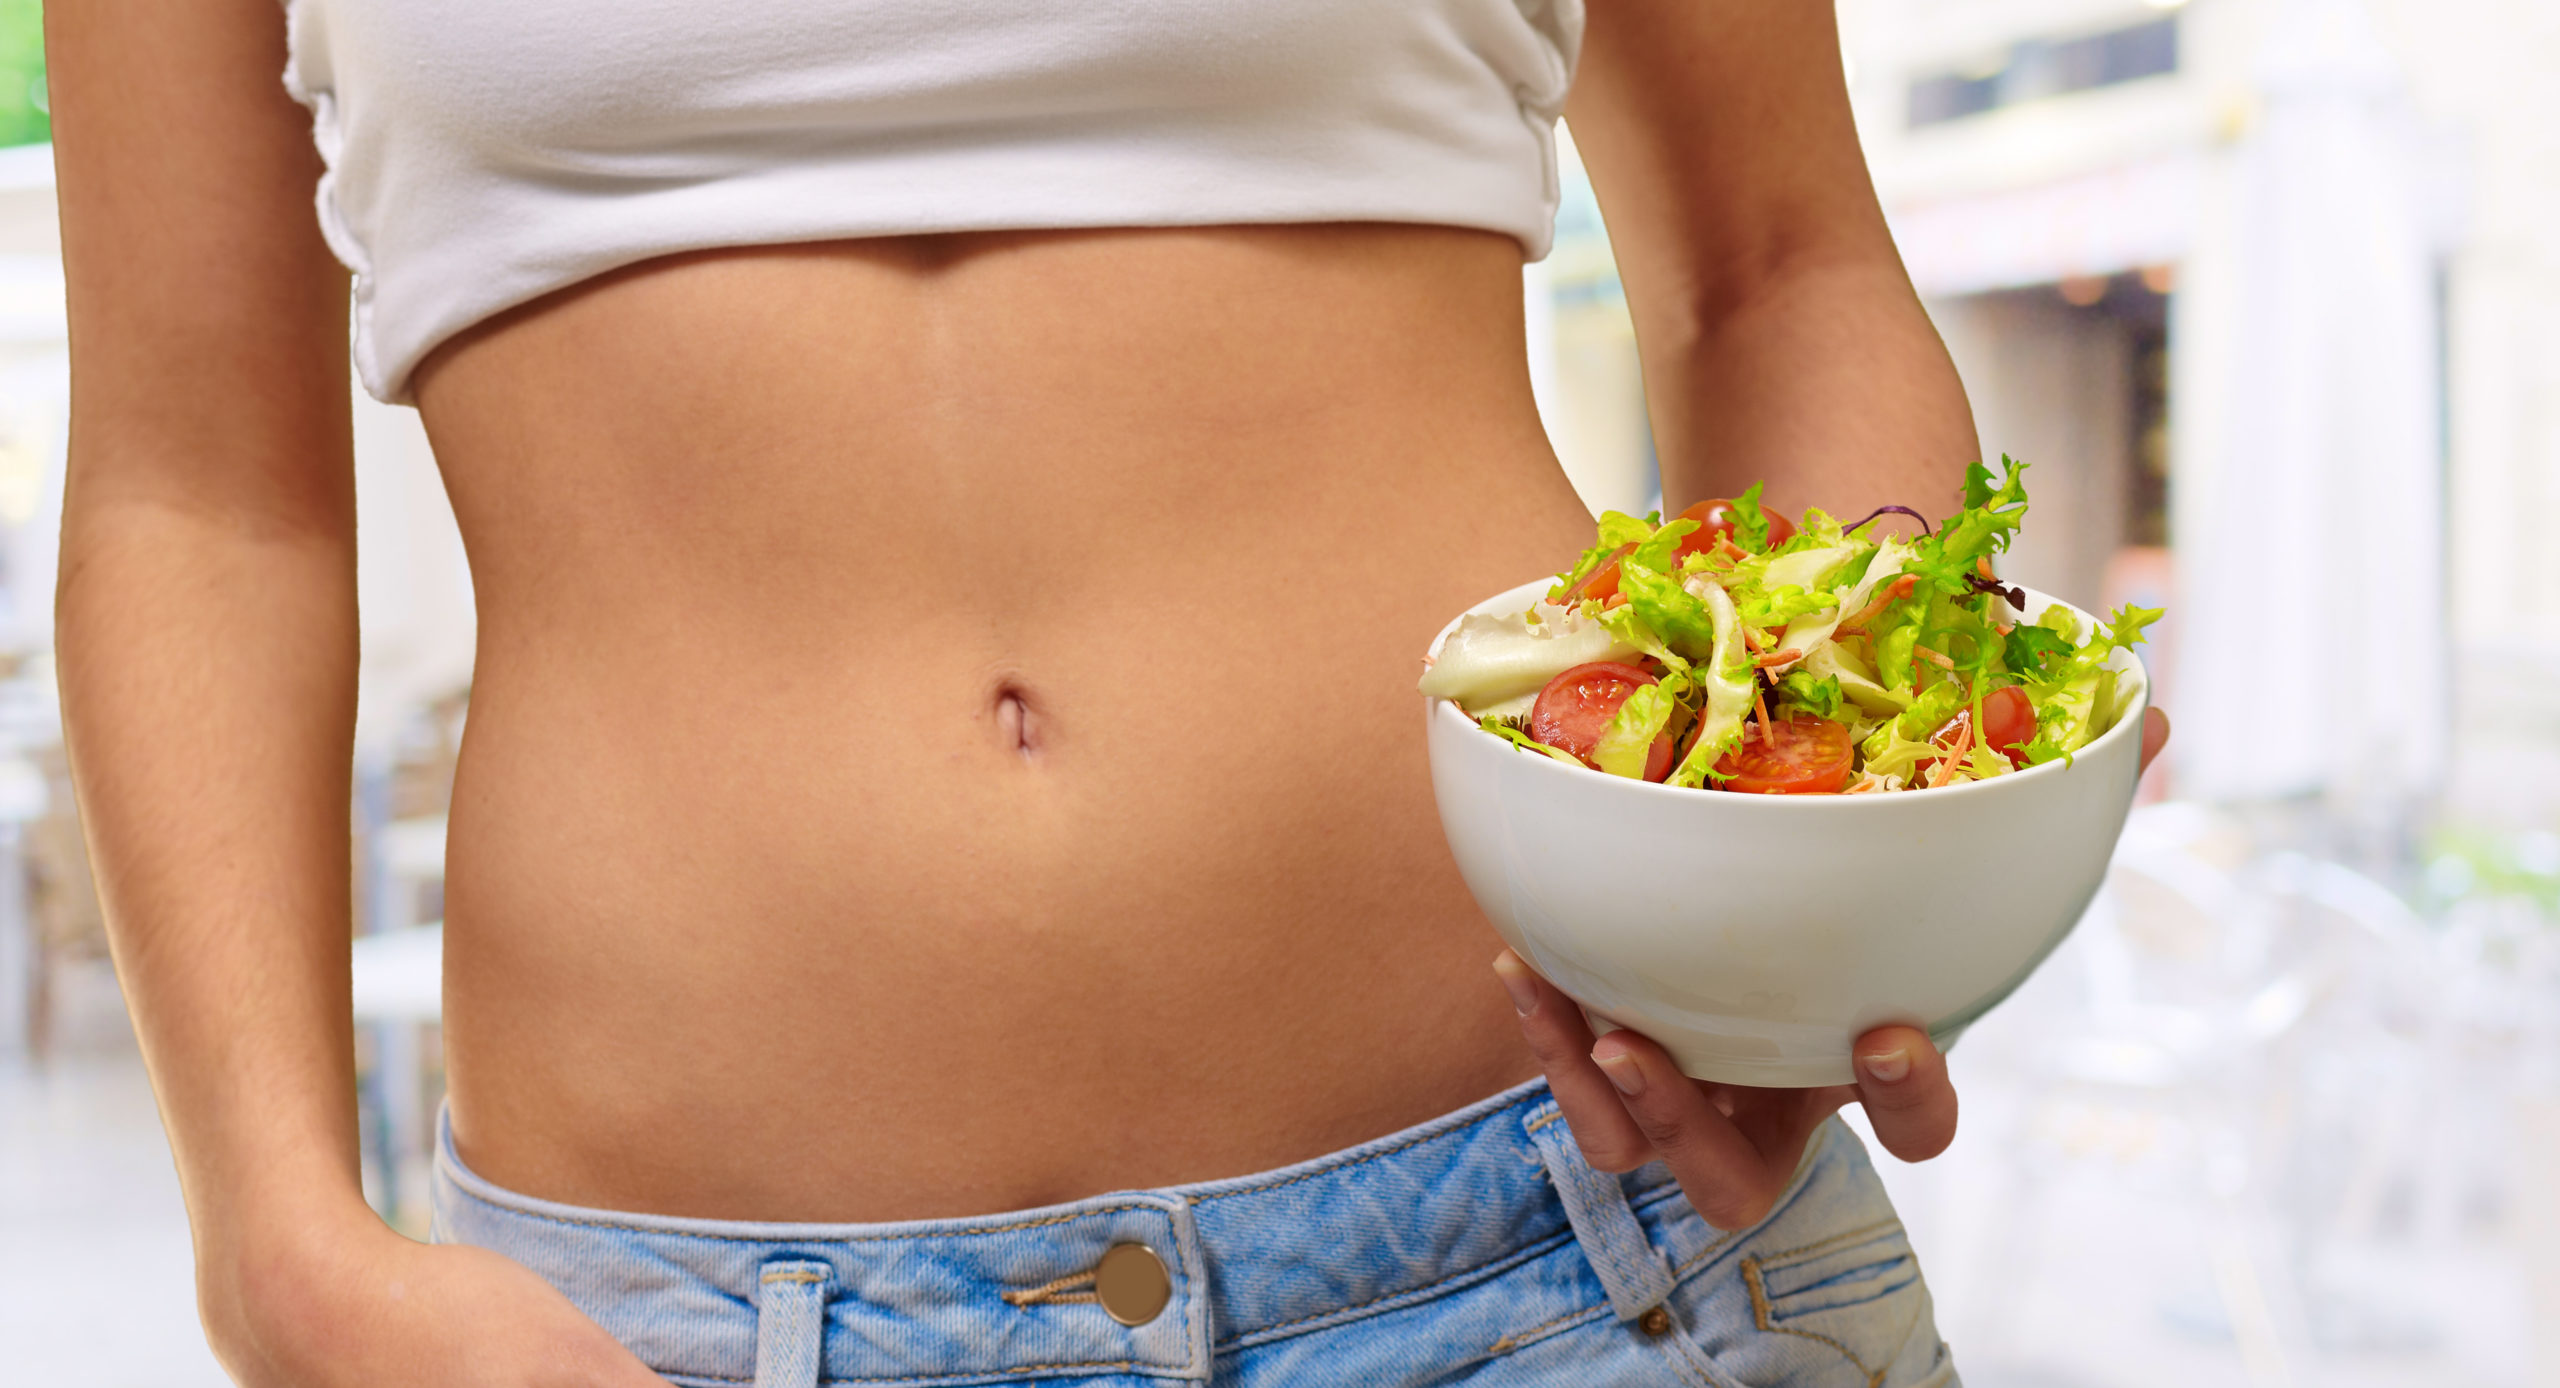 Лишний вес здорово. Правильное питание. Питание и стройность. Еда в животе. Здоровый живот женщины.